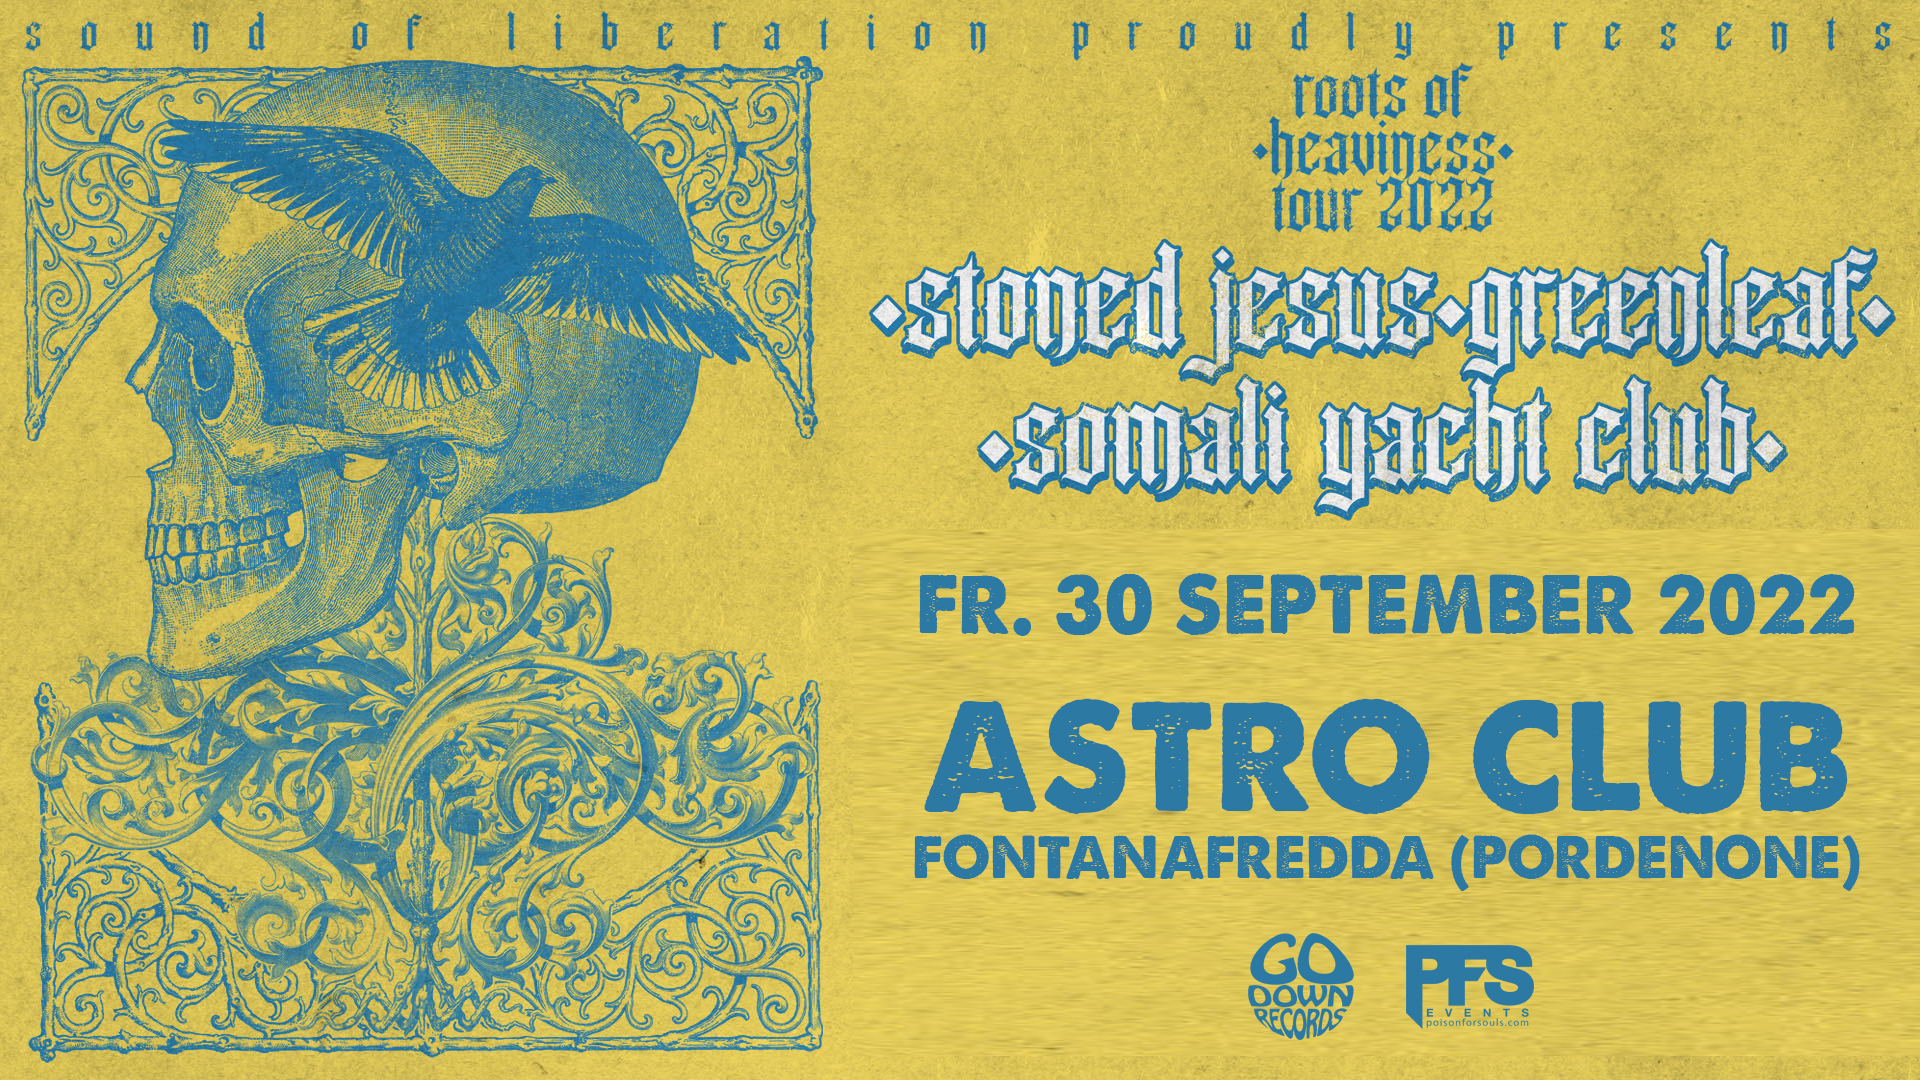 Stoned Jesus + Greenleaf + Somali Yacht Club live Astro Club Fontanafredda (PN)